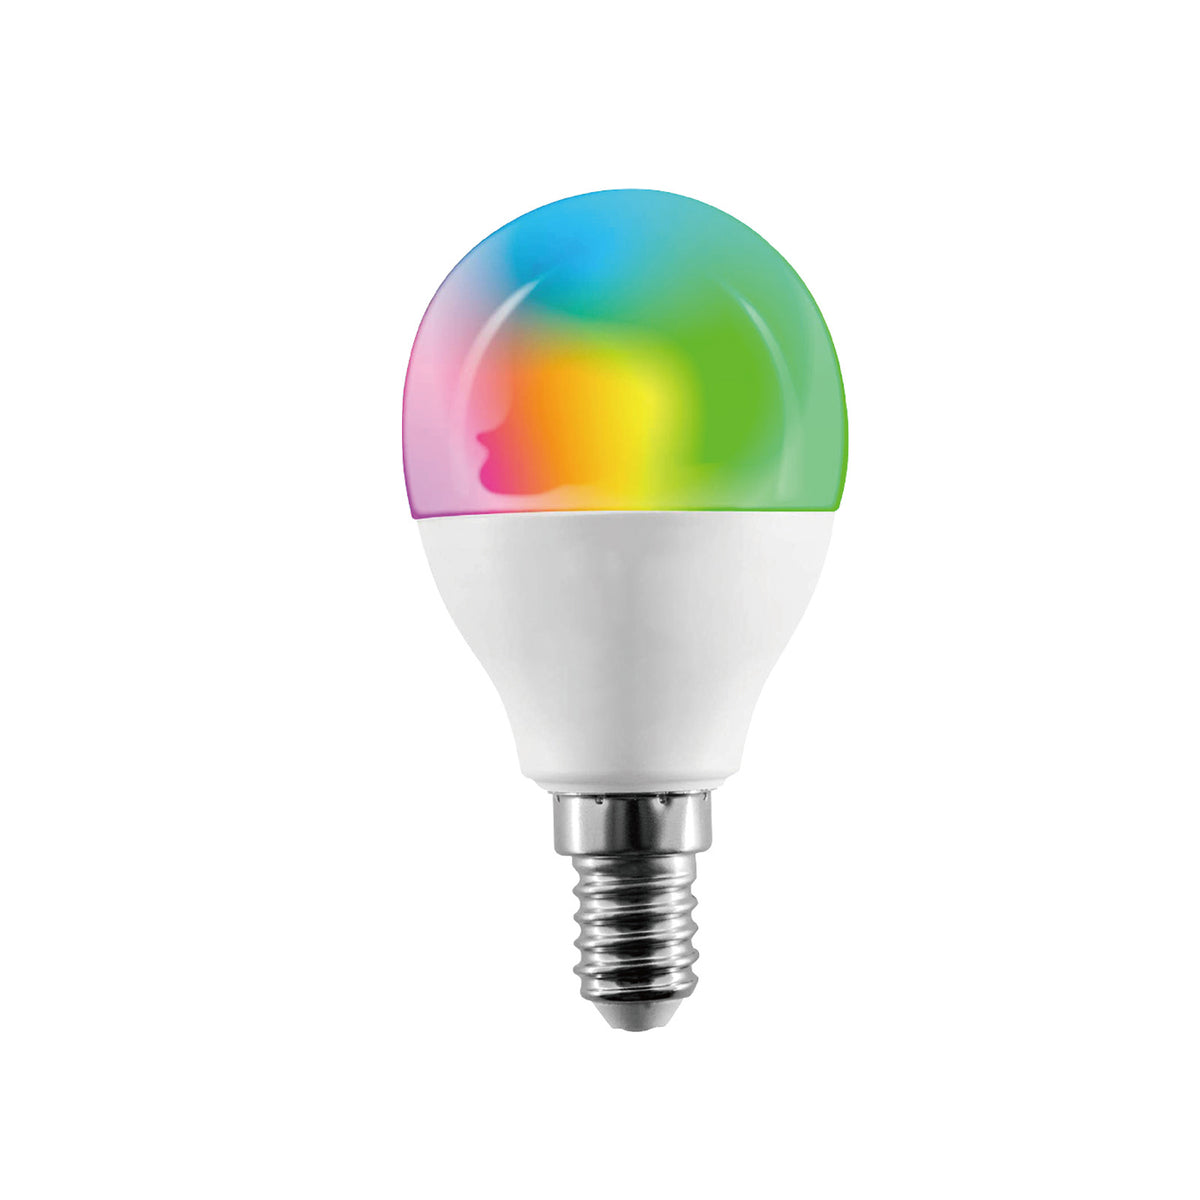 Intelligente Glühbirne 5,5 W, 350 Lumen, dimmbar, mit App, kompatibel mit Google und Alexa